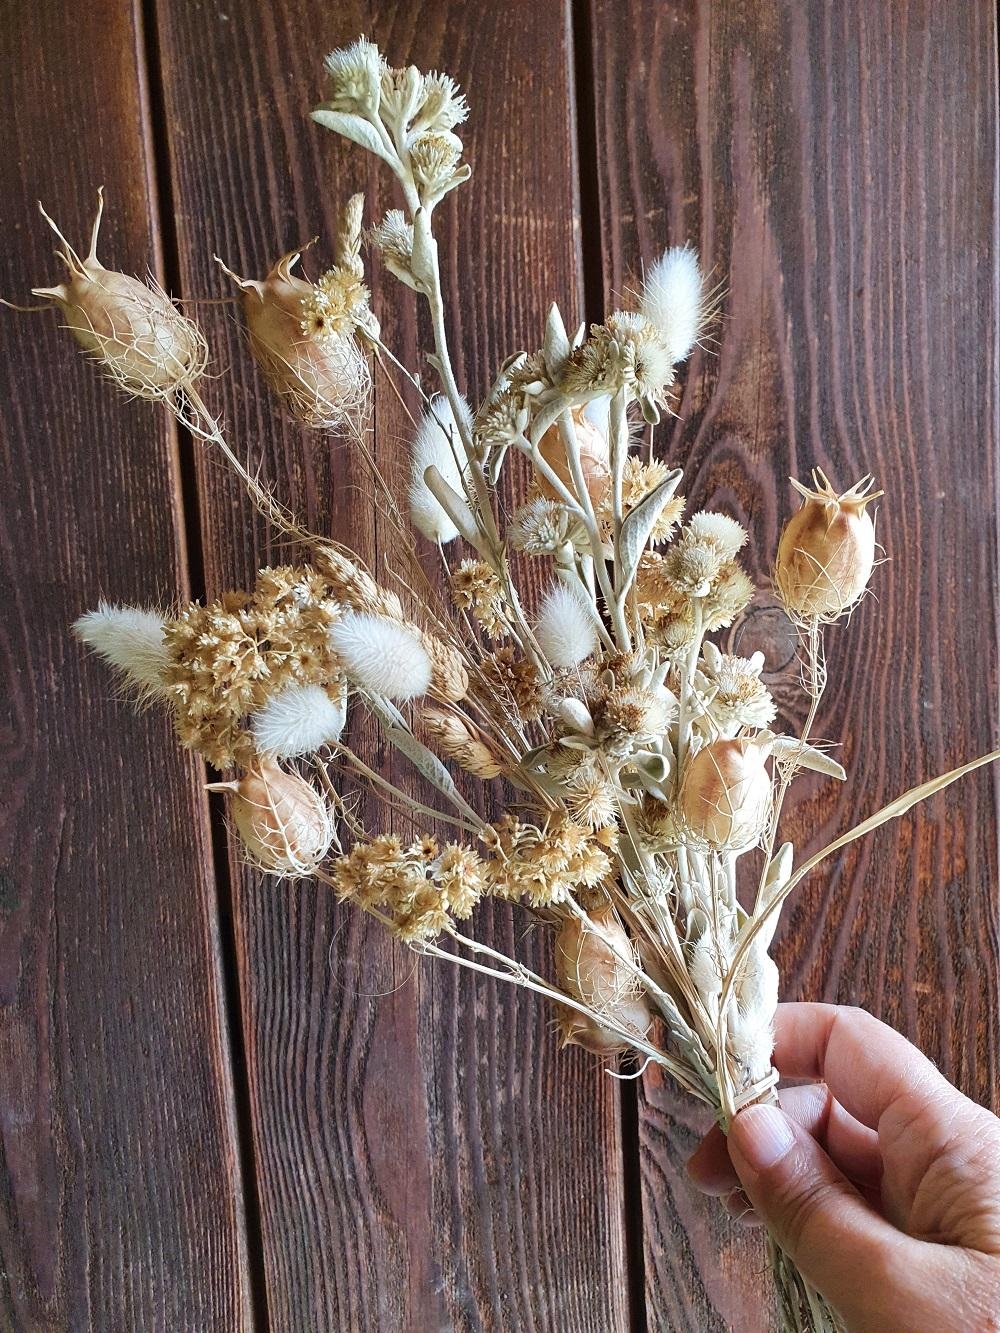 Trocken Blumen.Holle dir die Nature nach Hause.
https://www.etsy.com/at/listing/1075861853/trockenblumen-mix-o-dried-flo